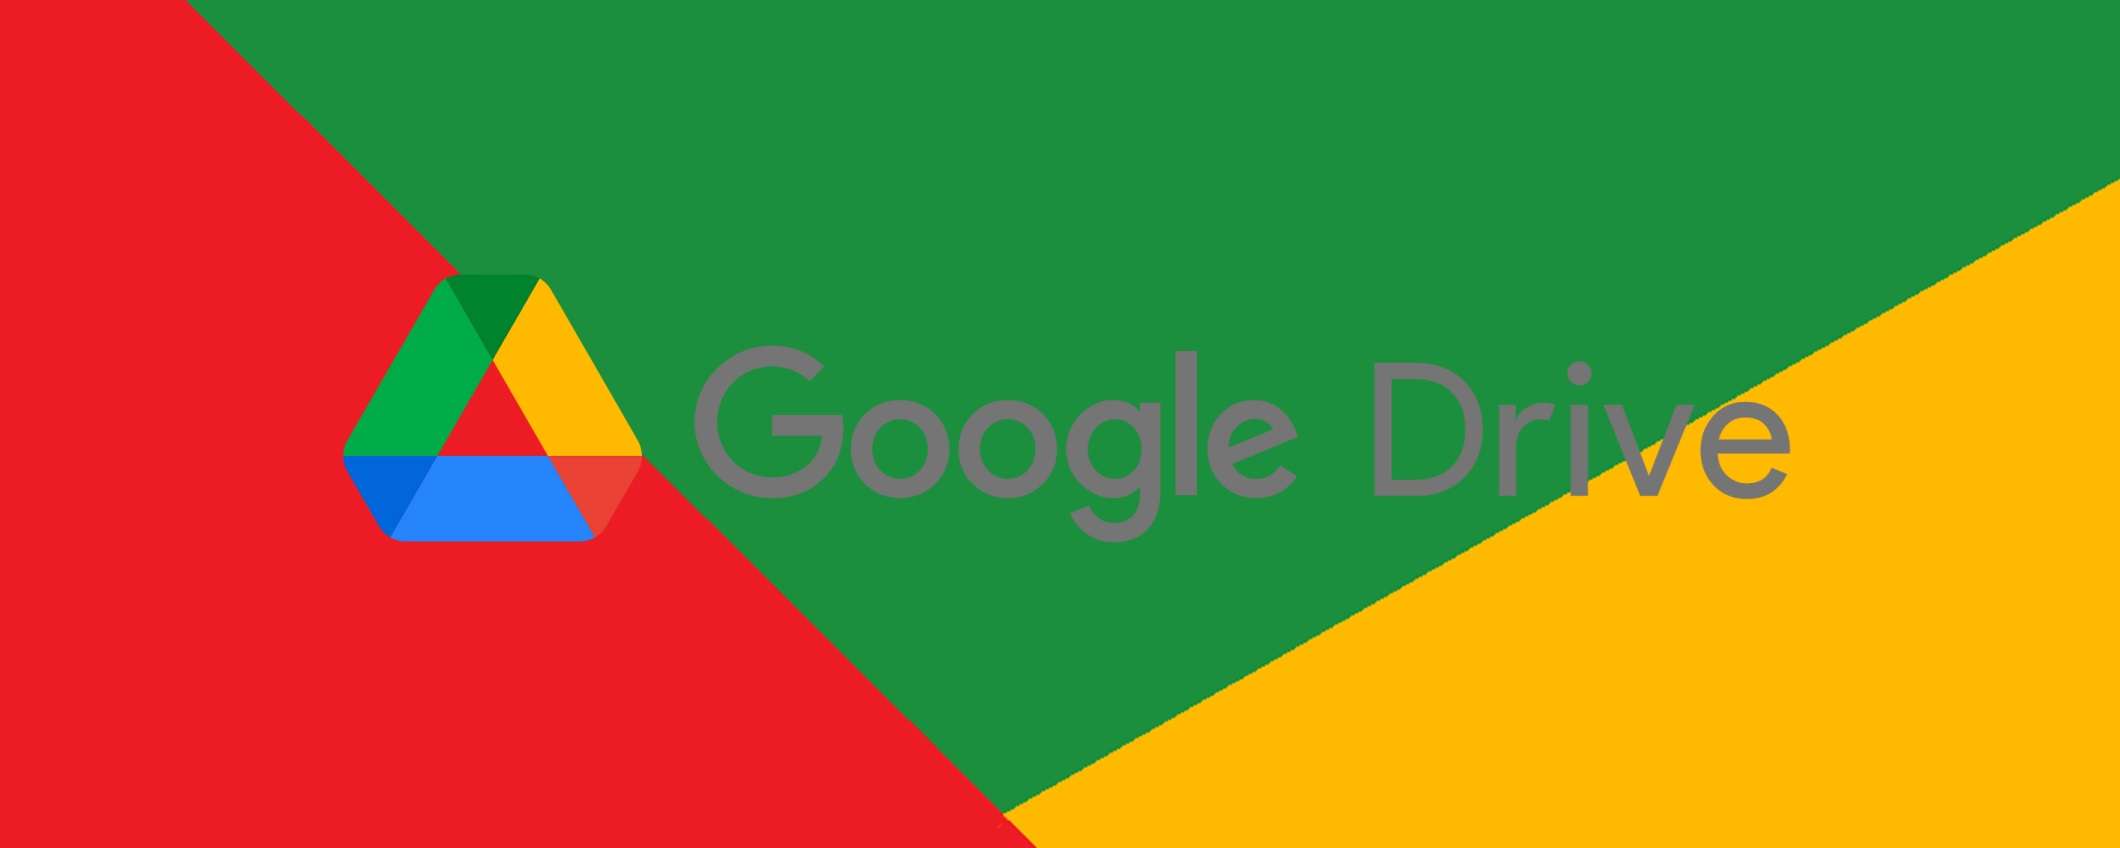 Google Drive le novità di marzo